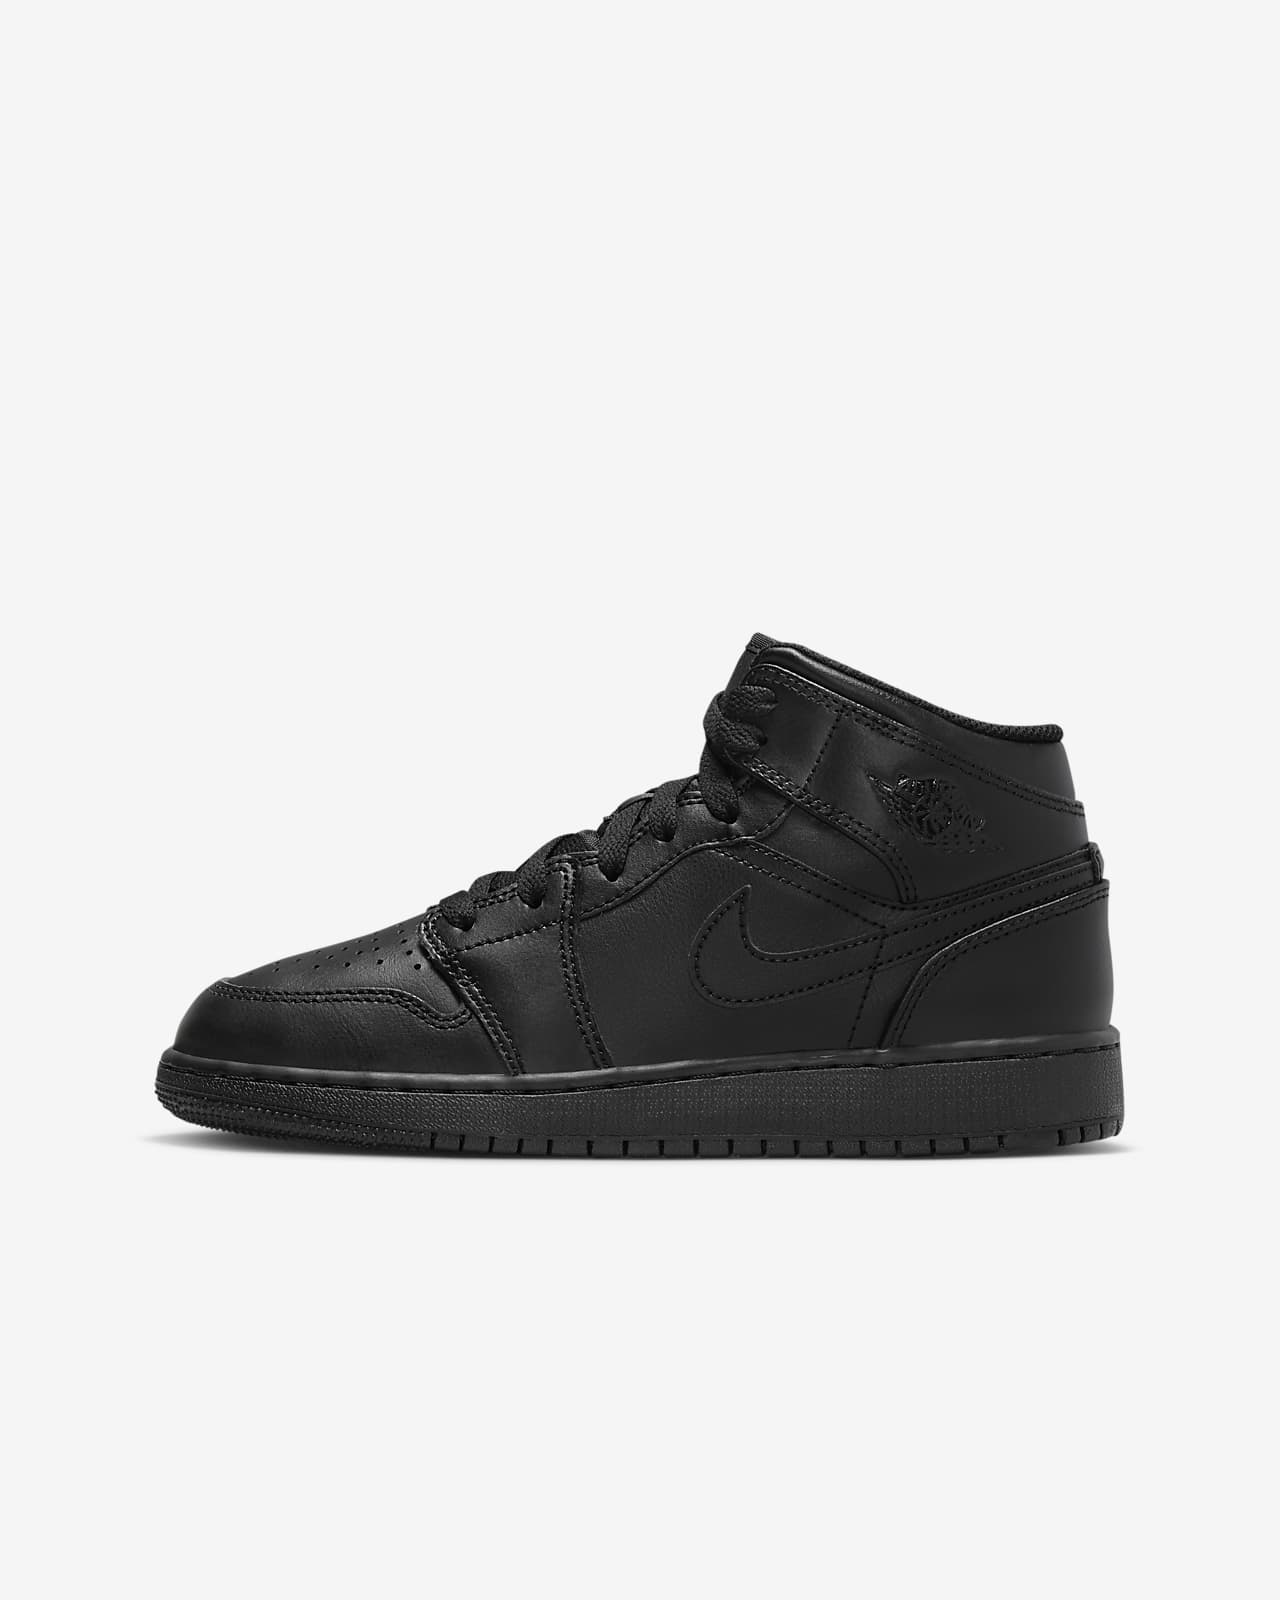 Jordan 1 Zapatillas - Niño/a. Nike ES